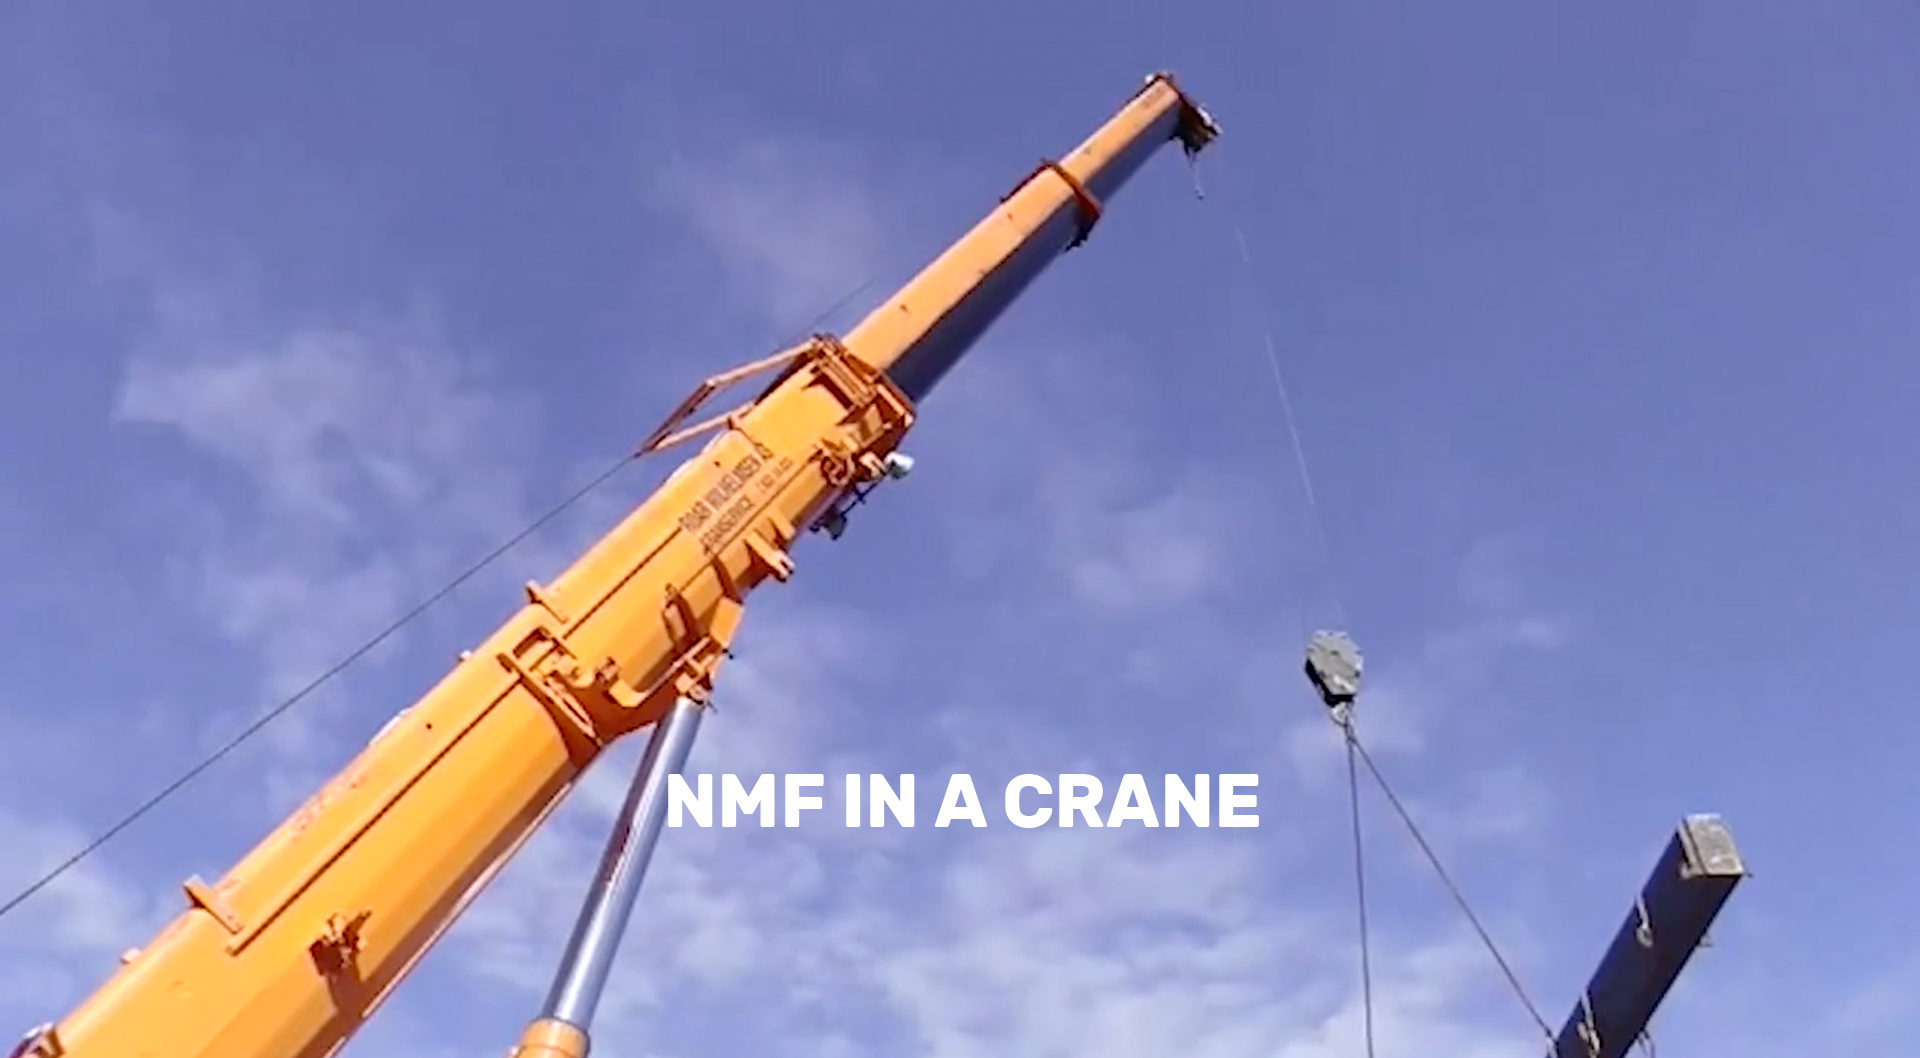 NMF IN A CRANE.jpg